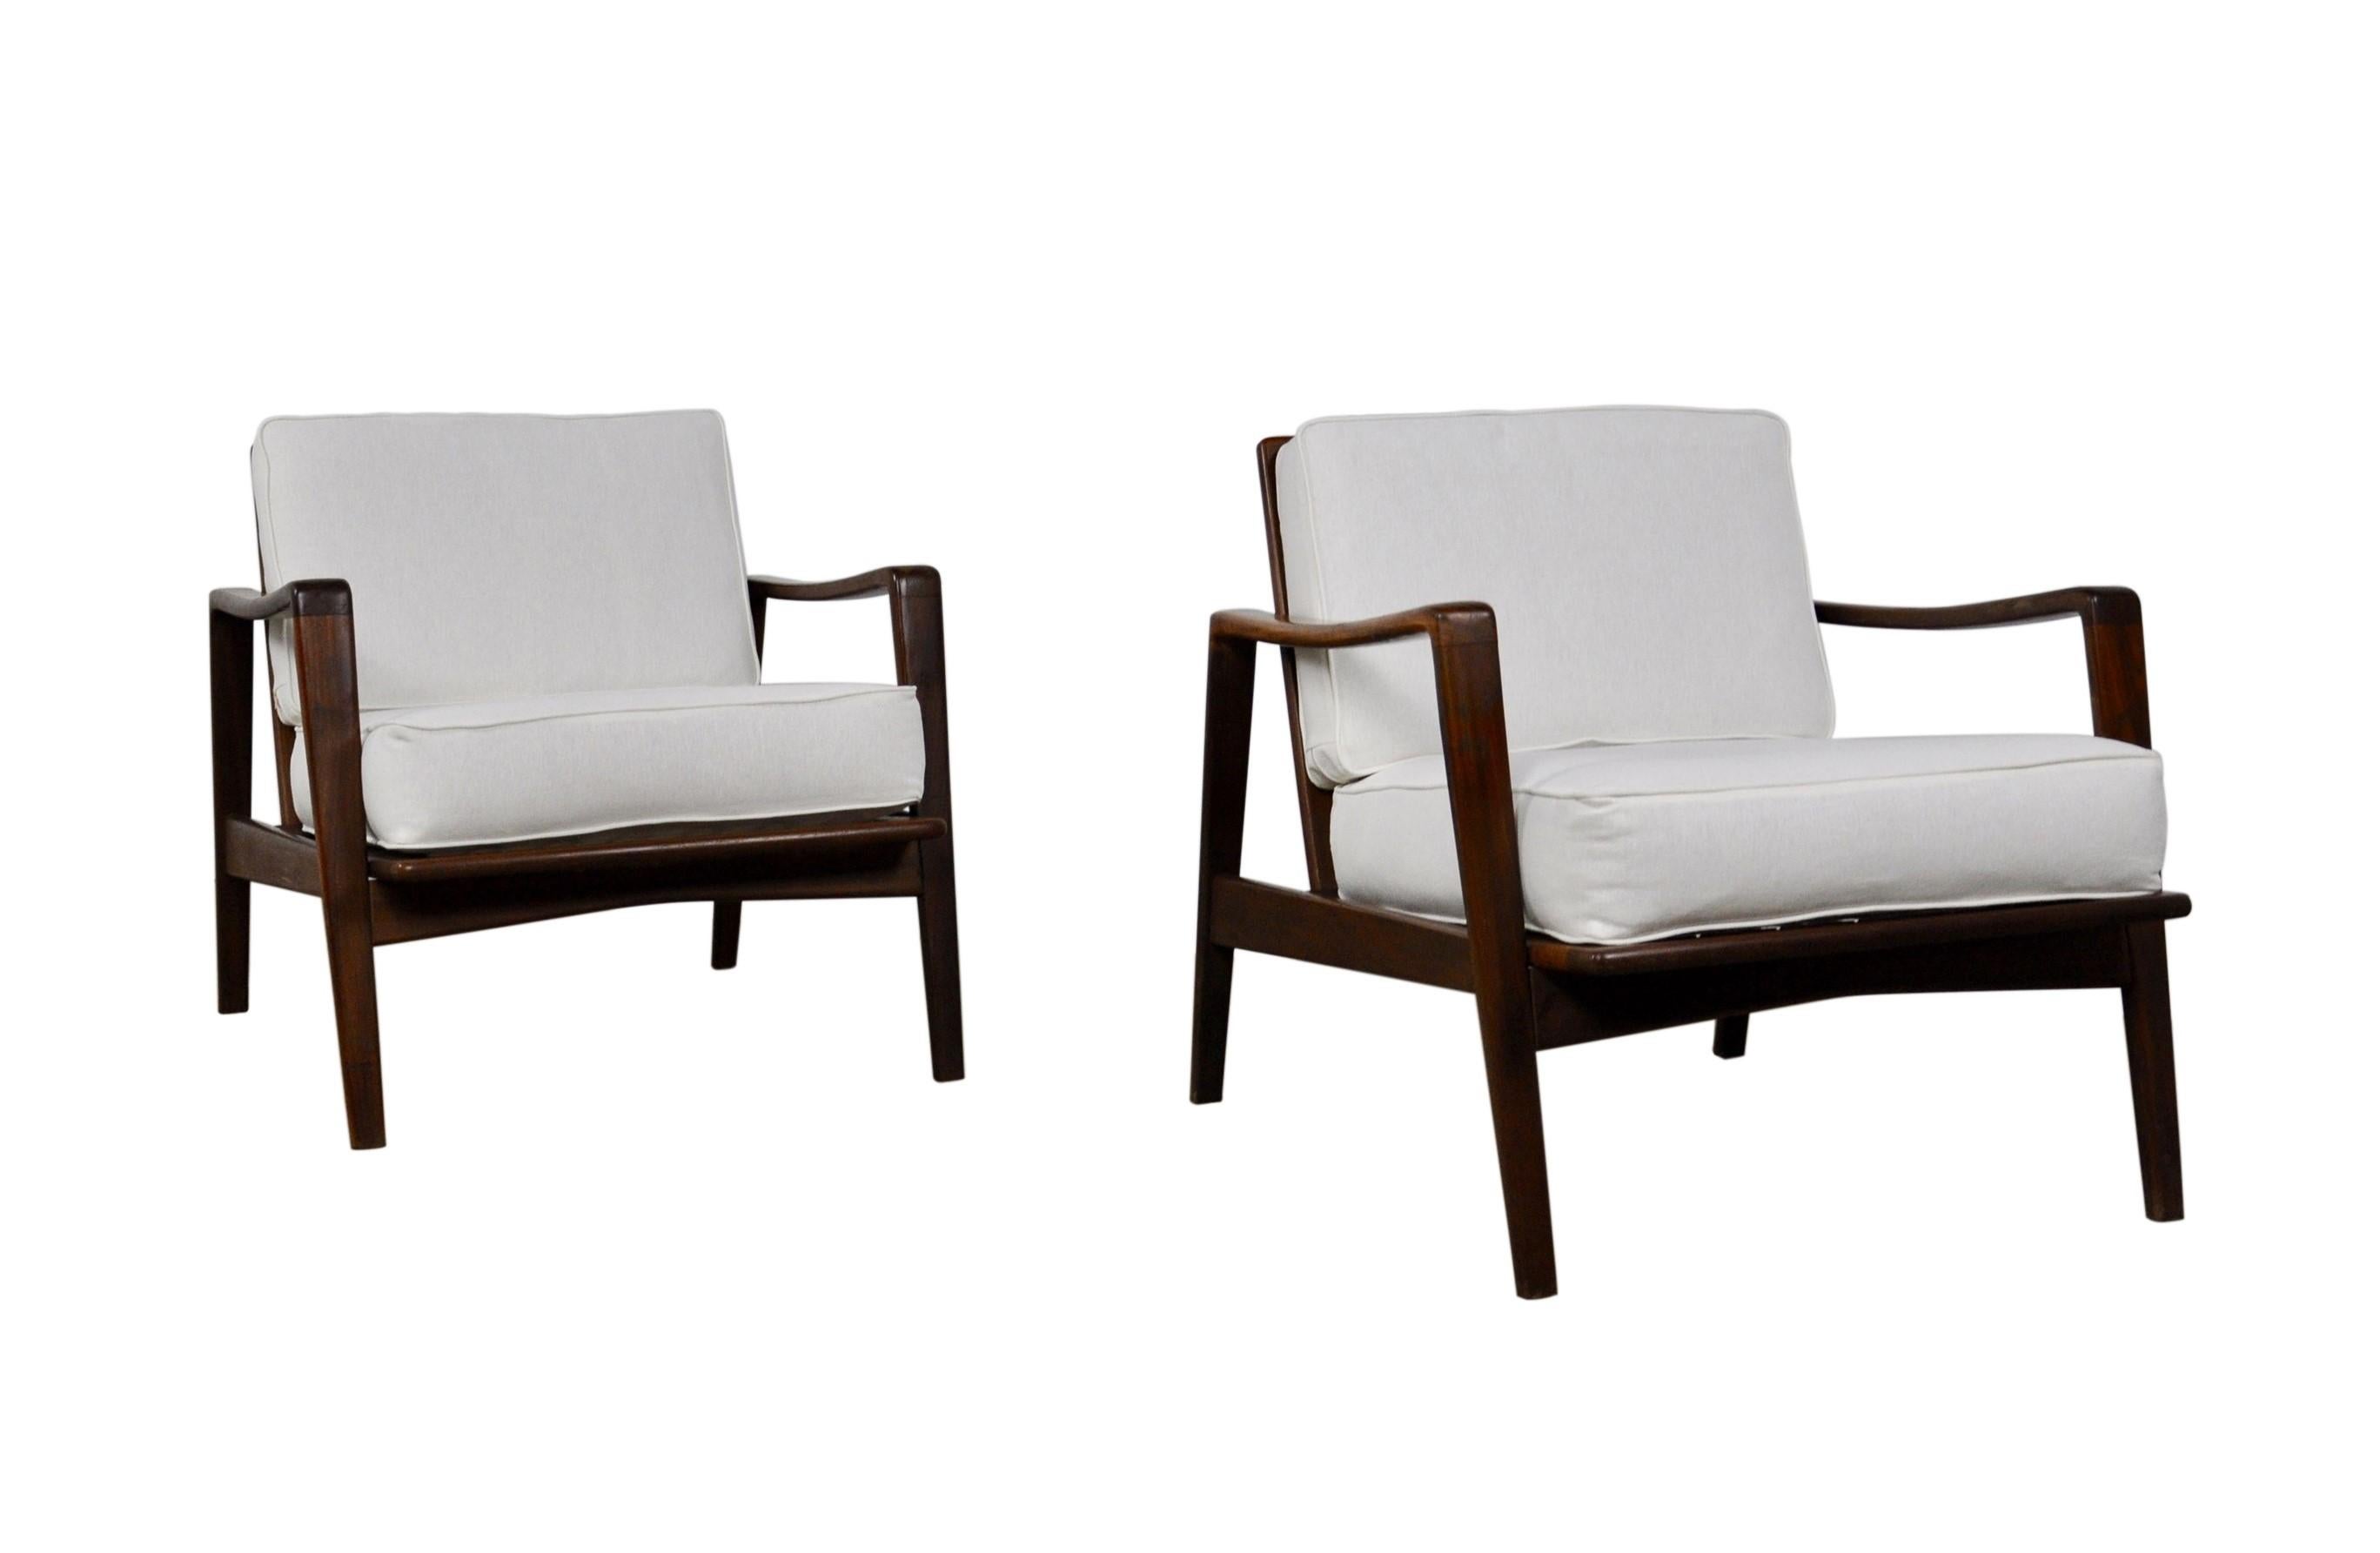 Paar Sessel Modell Nr. 30, entworfen von Arne Wahl Iversen, hergestellt von Komfort, Dänemark, 1960. Diese bequemen Stühle haben einen massiven Teakholzrahmen und weiße Polsterkissen. Die skulpturalen, modernen Teakholzrahmen können in jedem